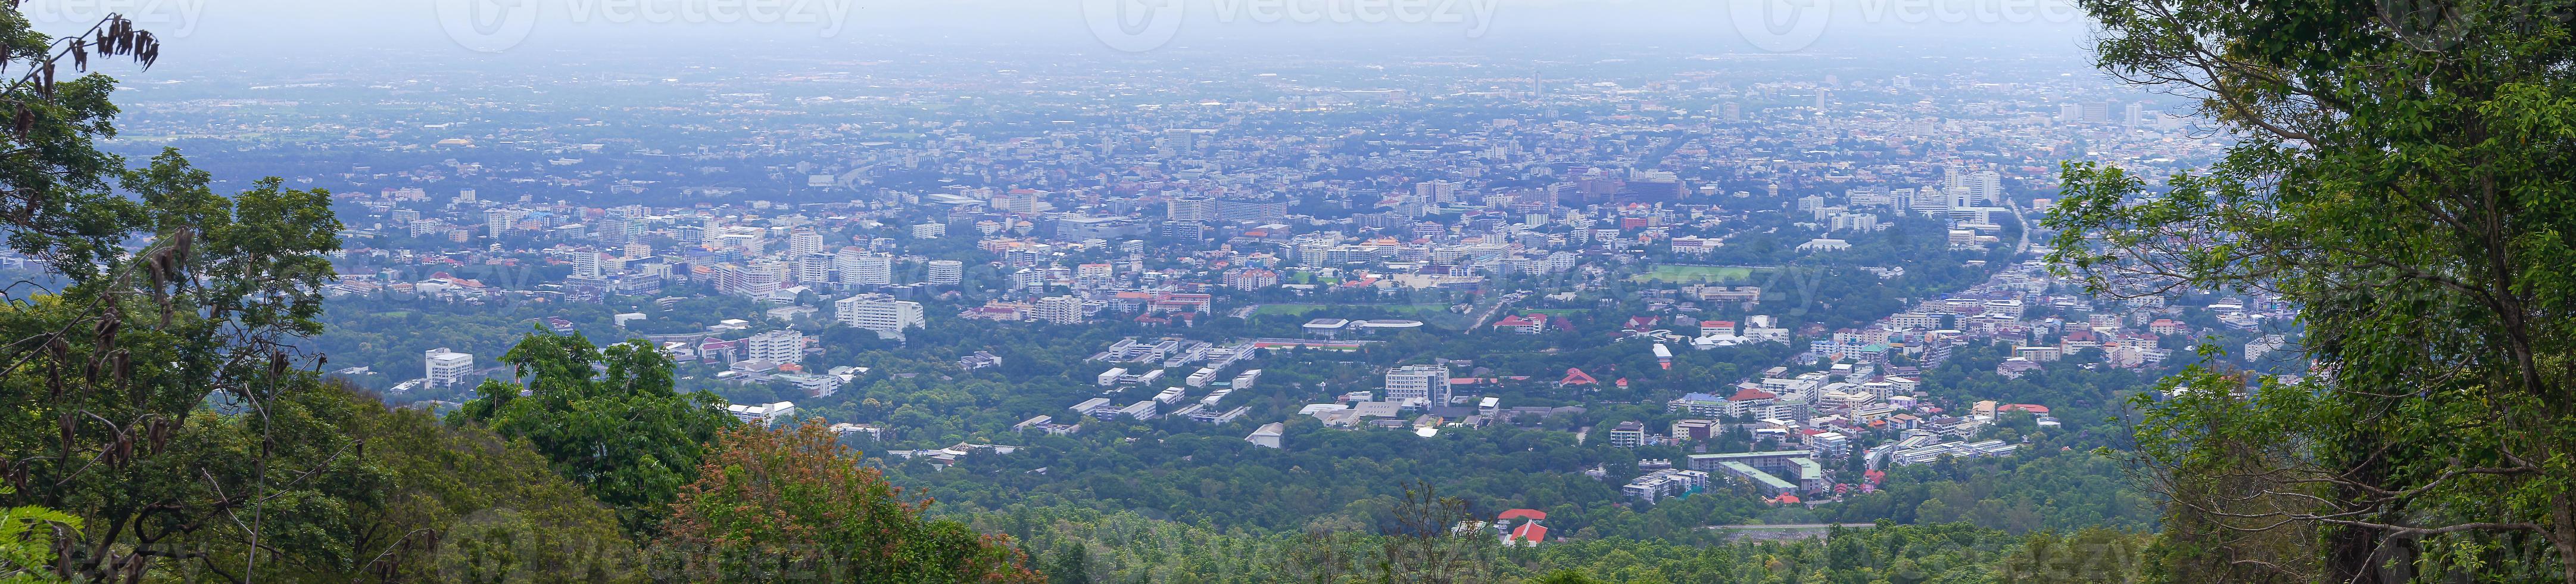 vue panoramique et élevée de la ville de chiang mai, thaïlande photo